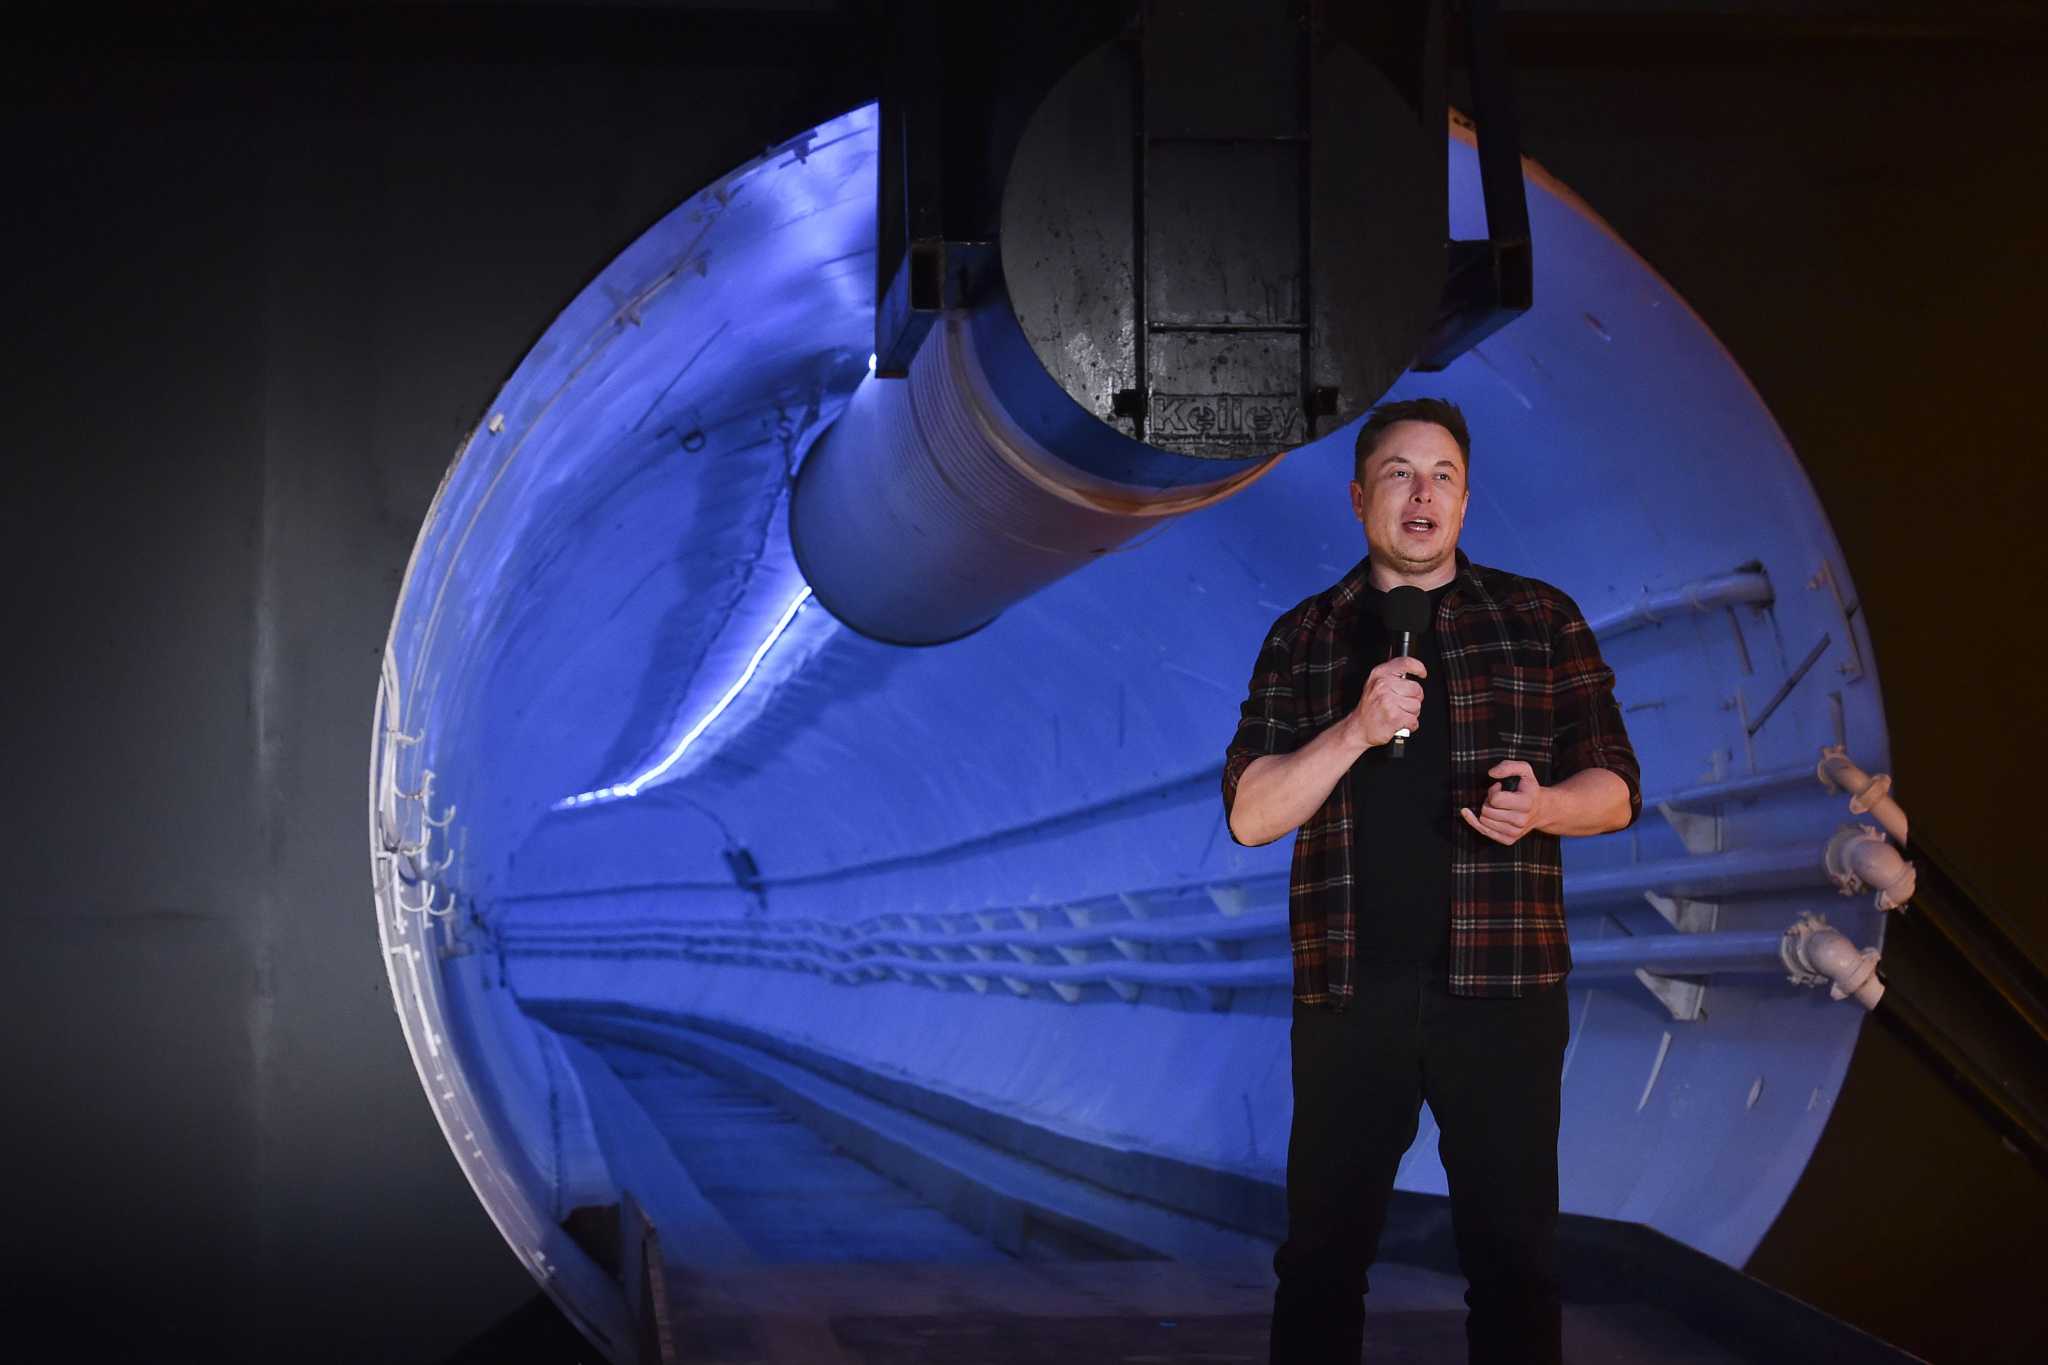 Elon Musk's Boring Loop is finally transporting passengers in Las Vegas -  CNET